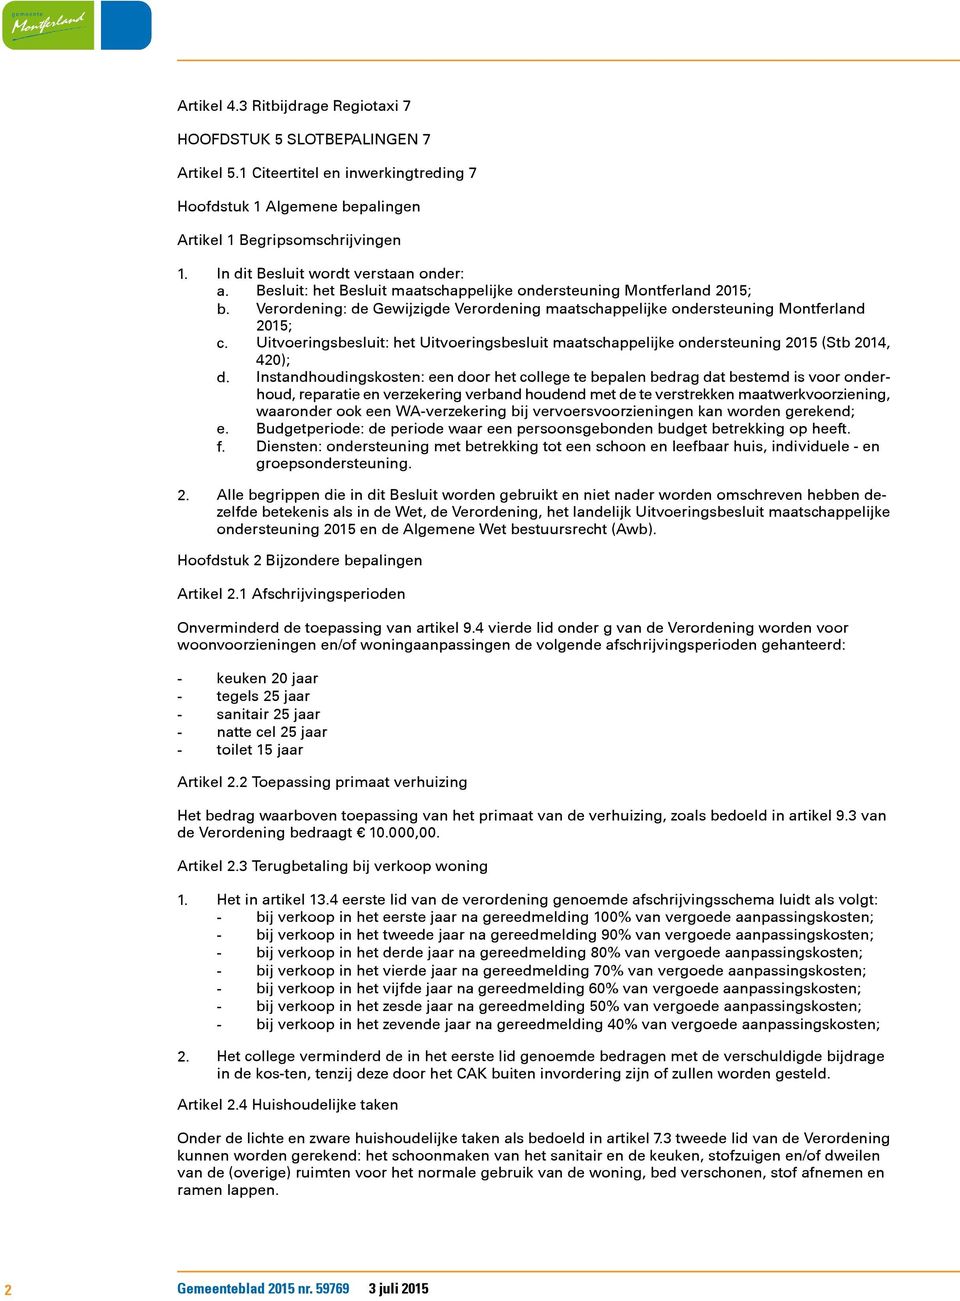 Verordening: de Gewijzigde Verordening maatschappelijke ondersteuning Montferland 2015; c. Uitvoeringsbesluit: het Uitvoeringsbesluit maatschappelijke ondersteuning 2015 (Stb 2014, 420); d.